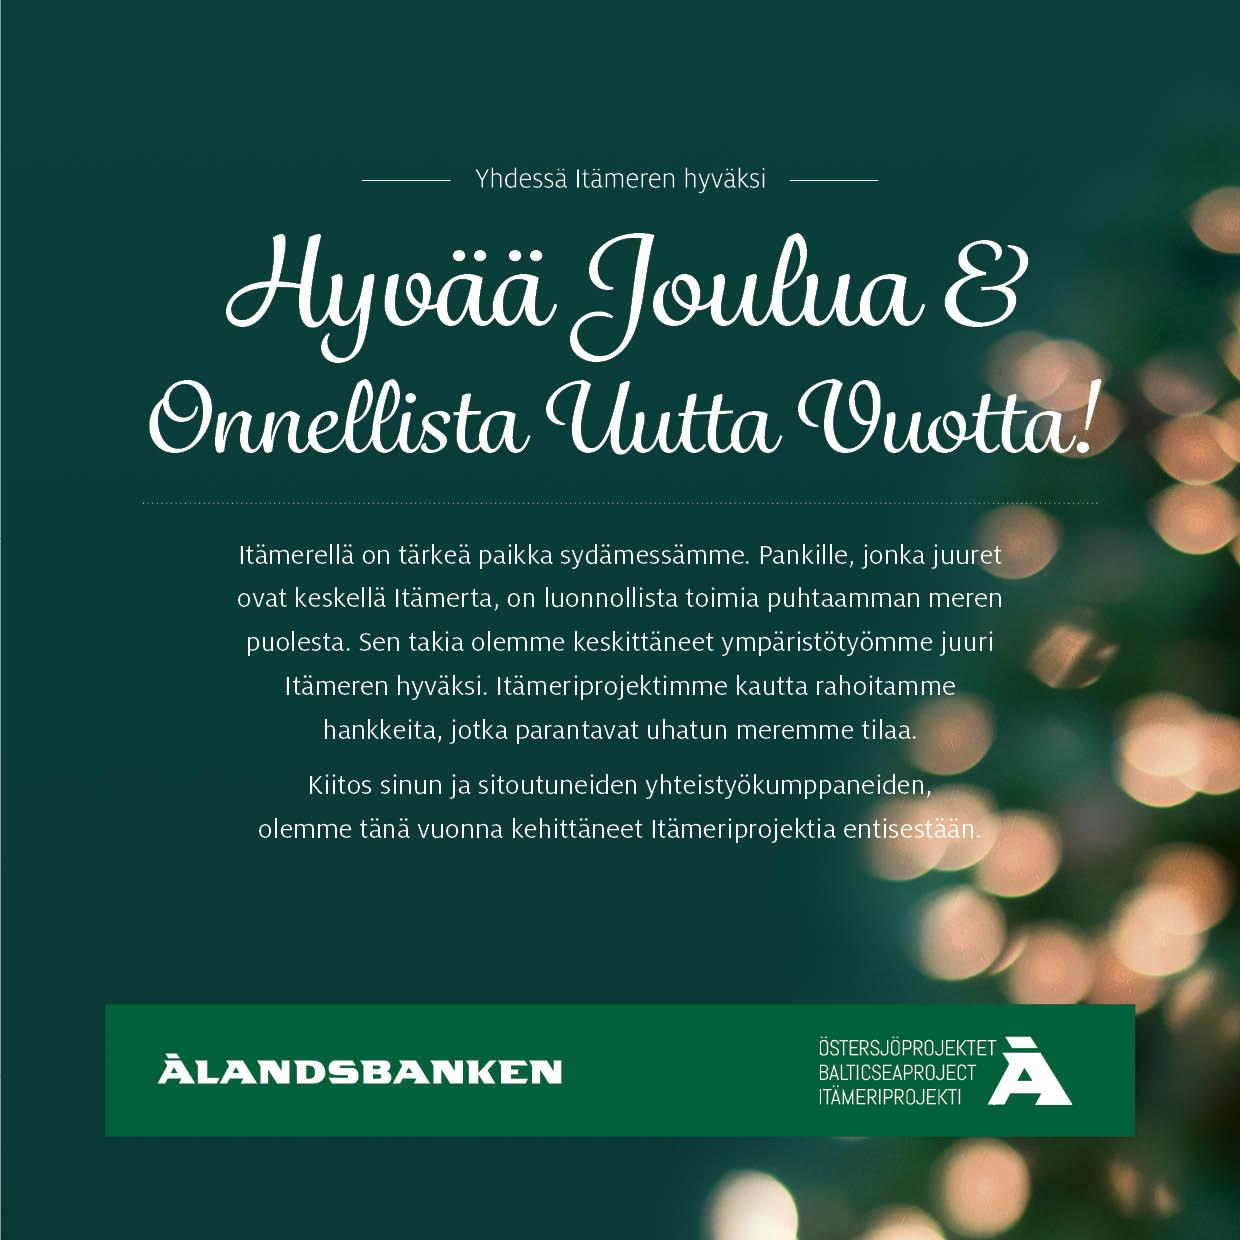 Ålandsbankenin Asiakaspalveluun